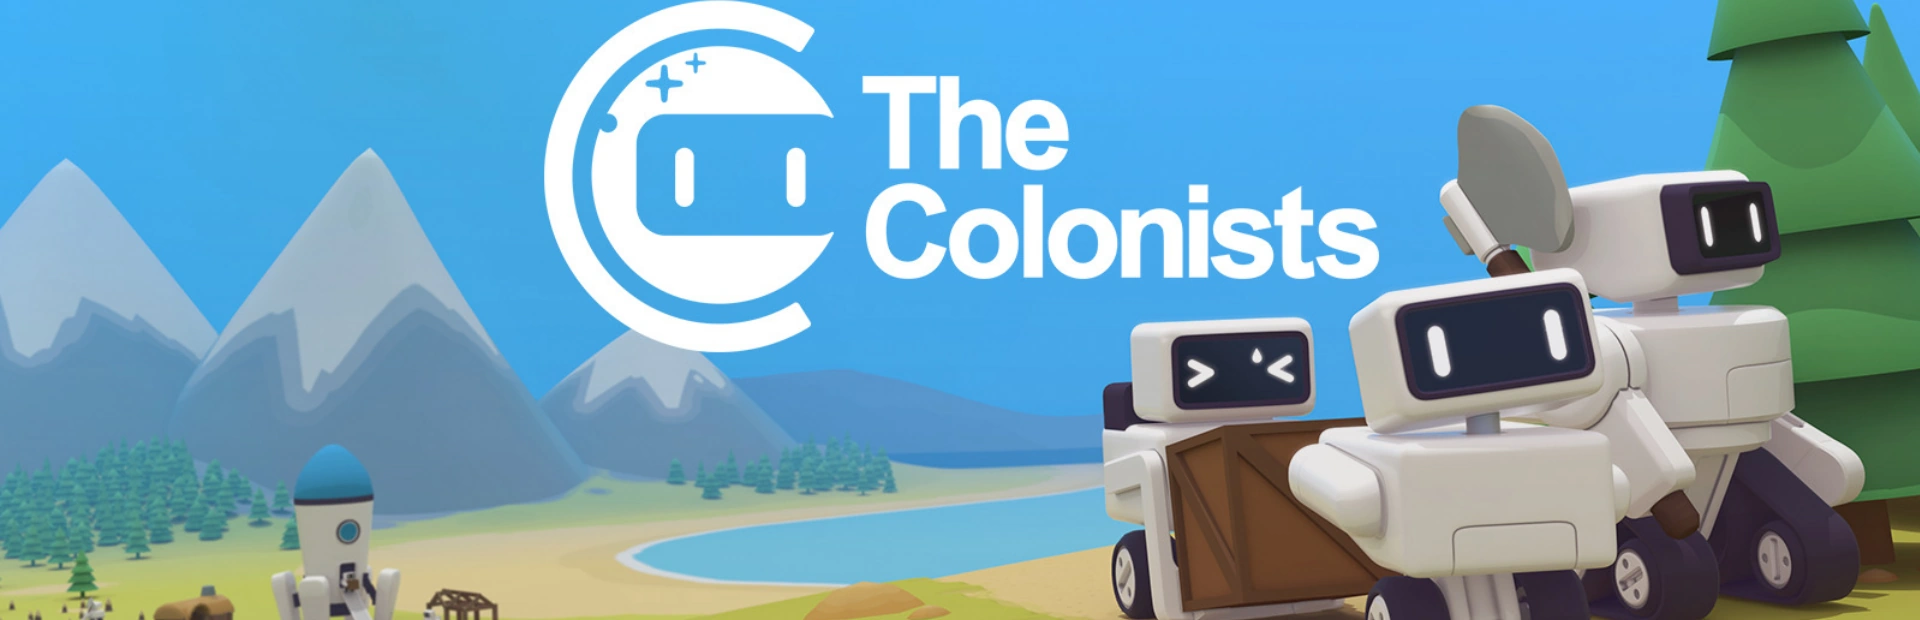 دانلود بازی The Colonists برای کامپیوتر | گیمباتو